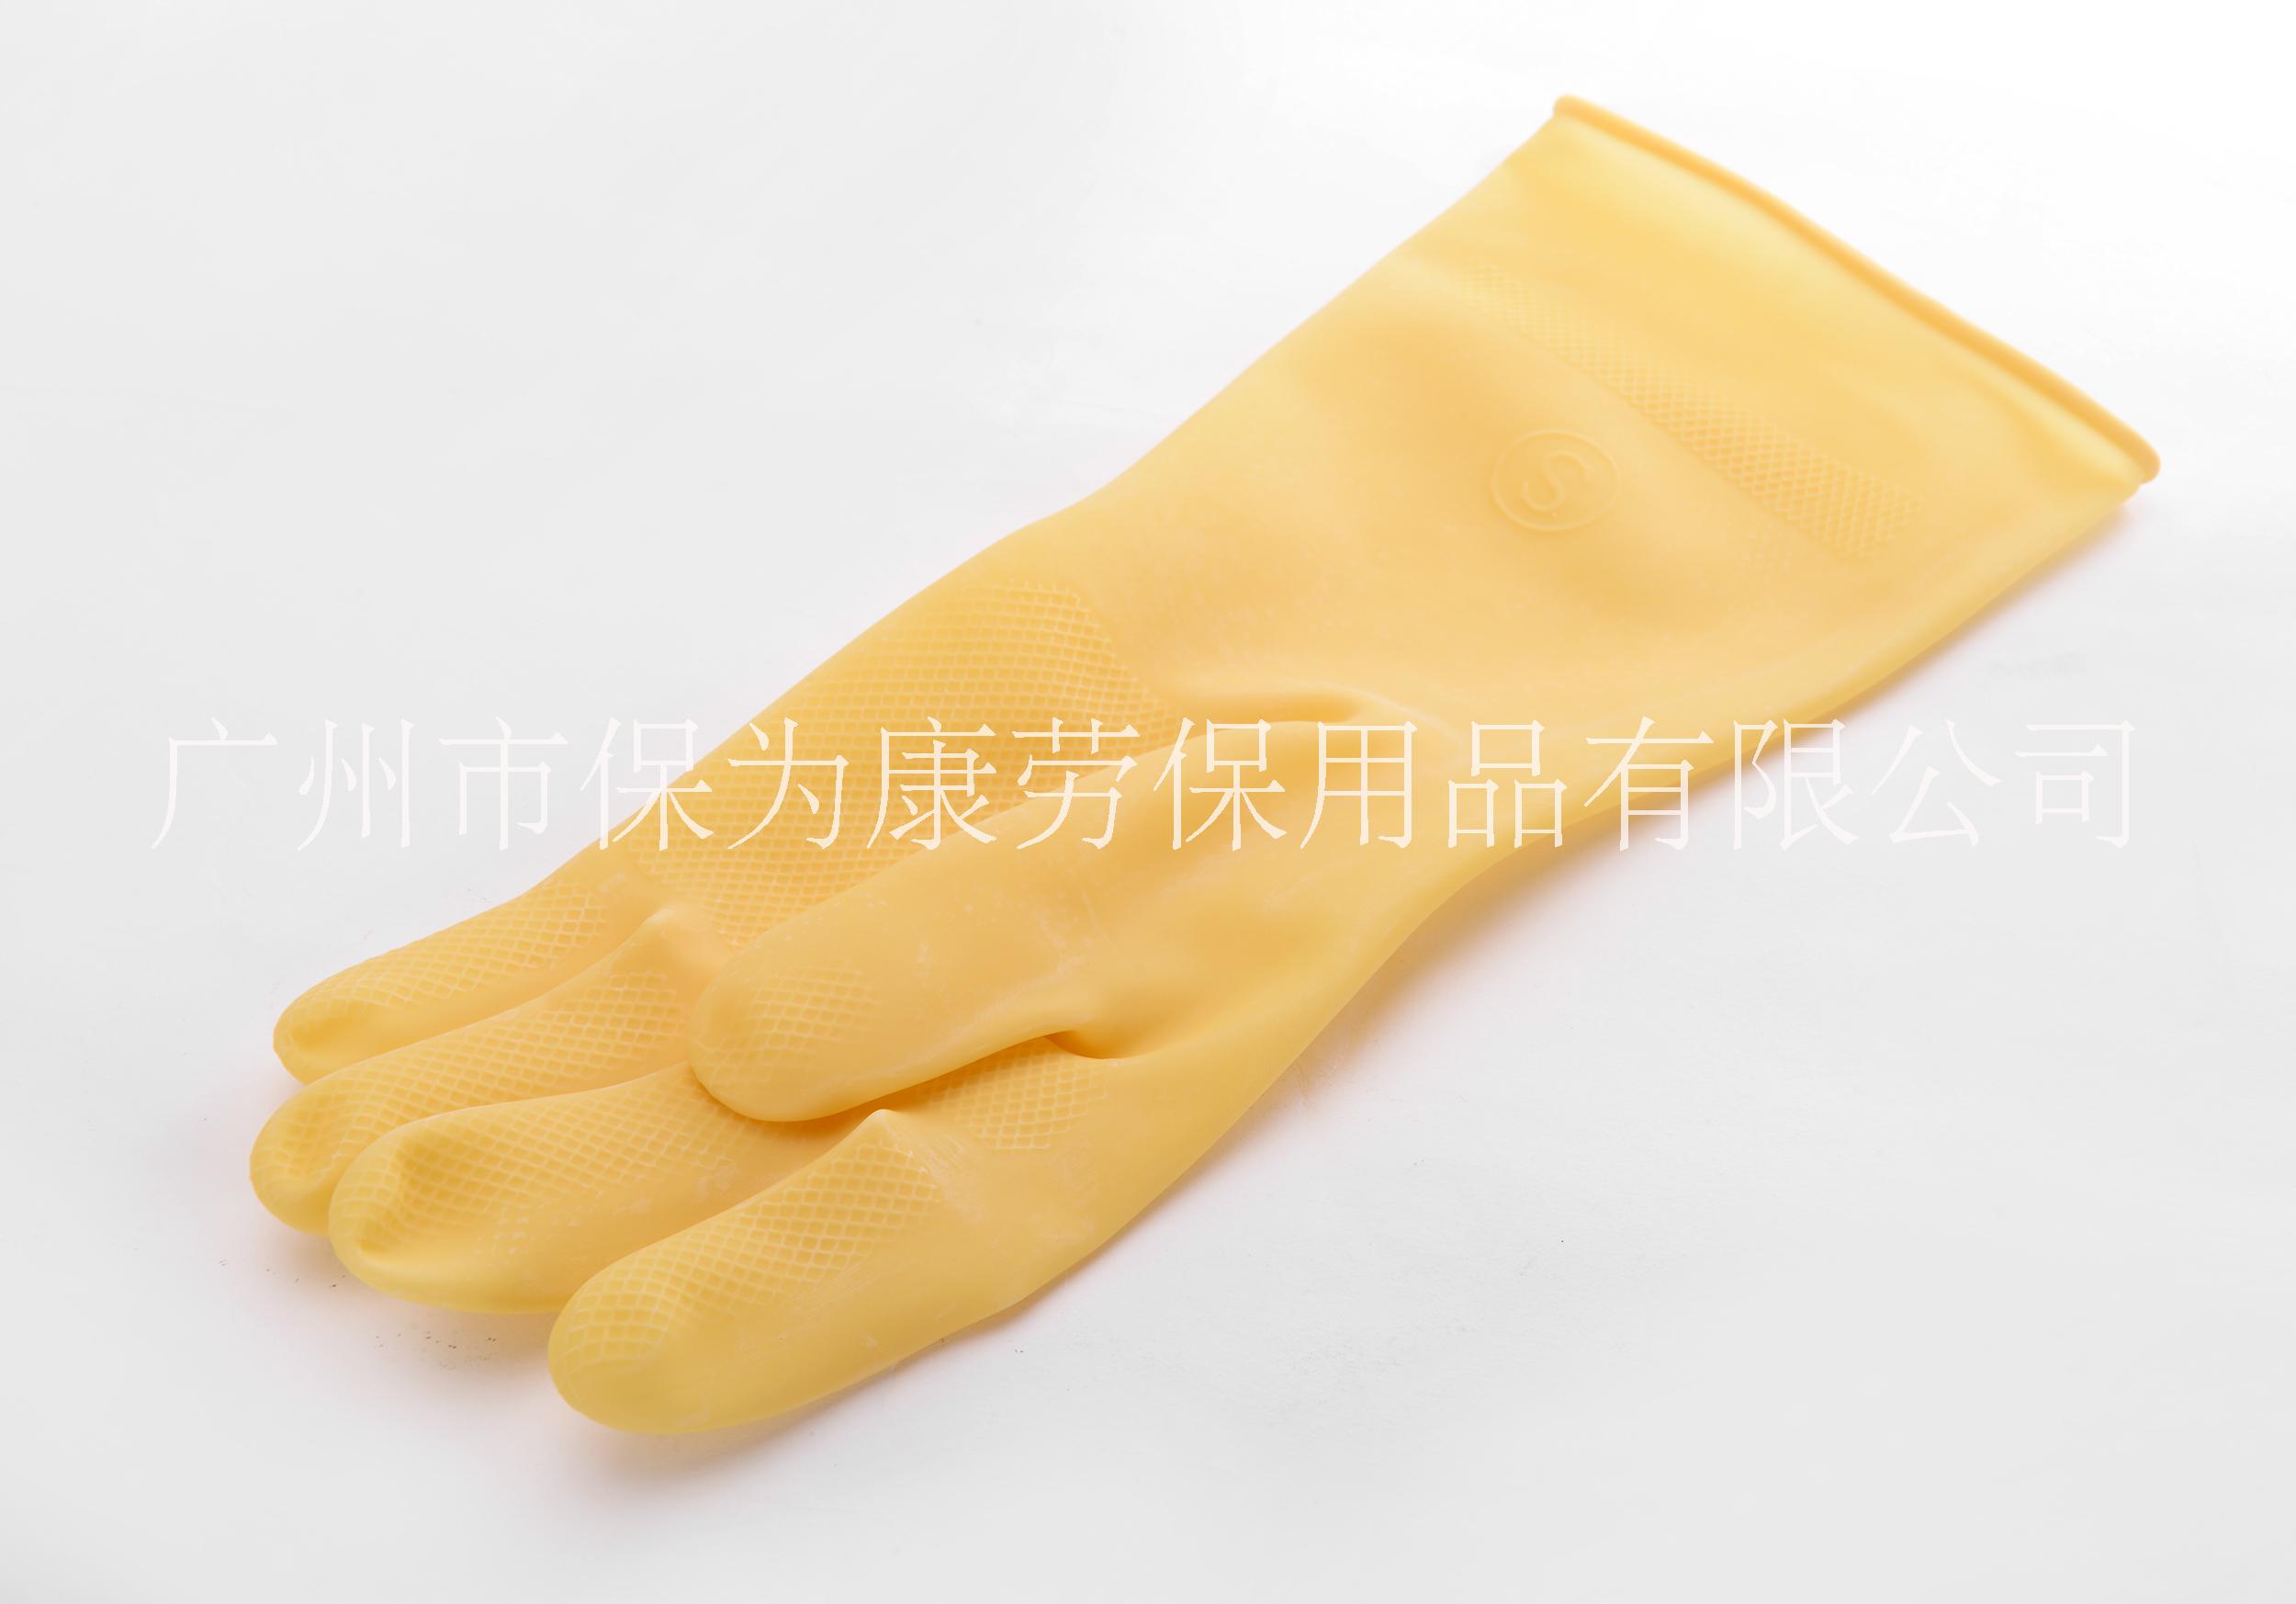 广州市k001乳胶手套厂家厂家直销保为康加厚乳胶防酸碱抗毒防污家用清洁工业用手套批发k001 k001乳胶手套